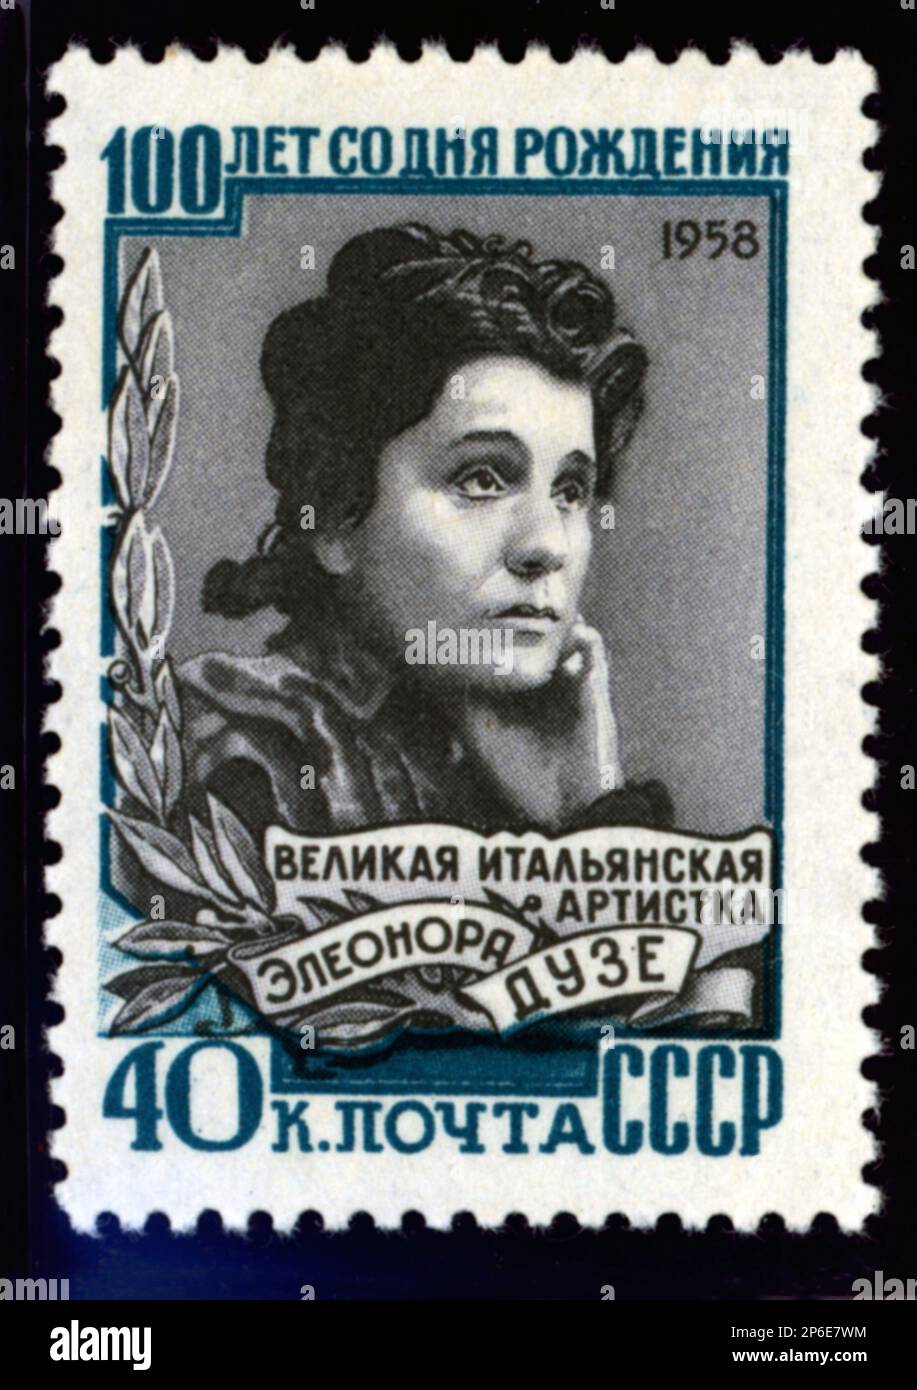 1958 , URSS : das 100. . Jubiläum der gefeierten ELEONORA DUSE ( 1858 - 1924 ) , die von der russischen Post mit einem Poststempel gefeiert wird . Duse ist die berühmteste italienische Schauspielerin der Welt , gefeierte Liebhaberin des italienischen Dichters GABRIELE D'ANNUNZIO . - TEATRO - Theater - ATTRICE - Portrait - ritratto - DIVA - DIVINA - attrice teatrale - D' Annunzio - Dannunzio - FRANCOBOLLO - FILATELIA - Valore filatelico - RUSSLAND --- Archivio GBB Stockfoto